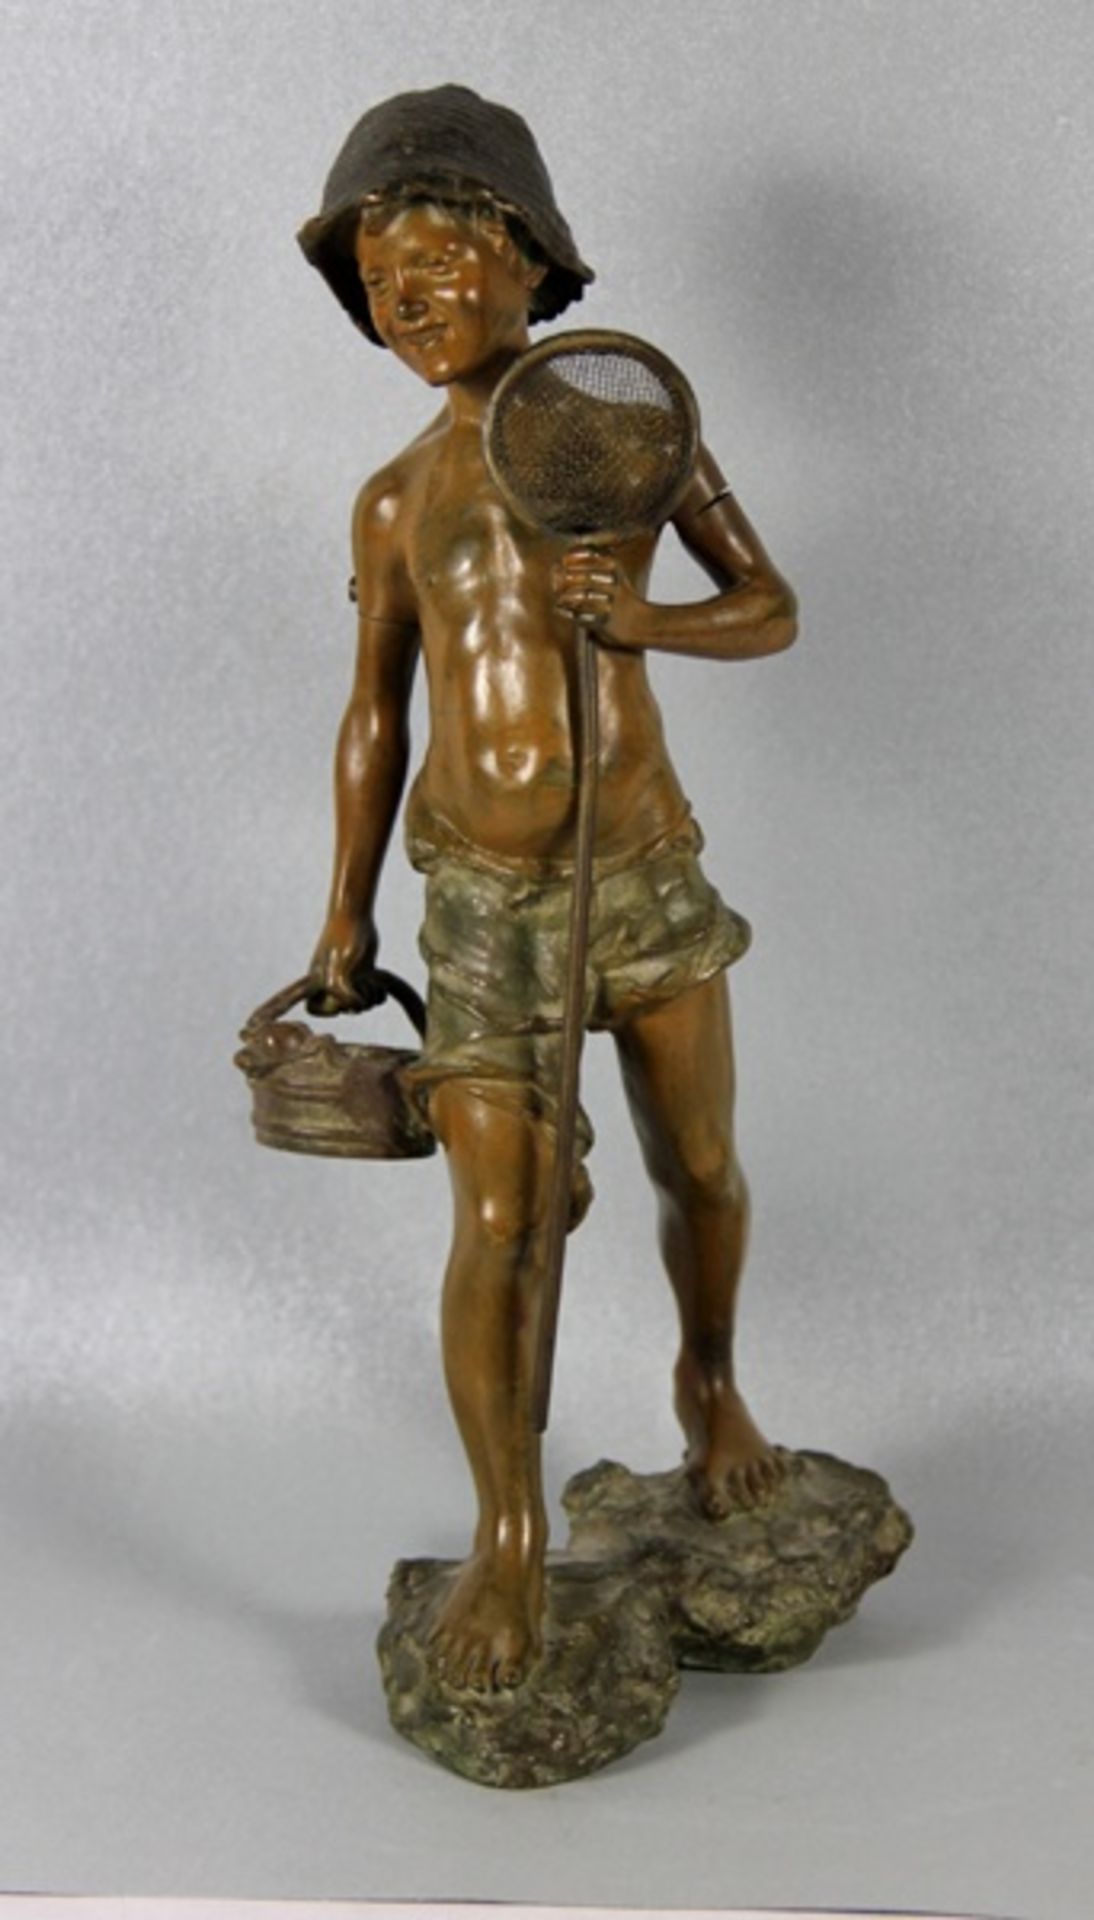 de Martino, Giovanni1870-1935/38, Bronze, Fischerknabe mit kurzer Hose und Mütze, in der einen